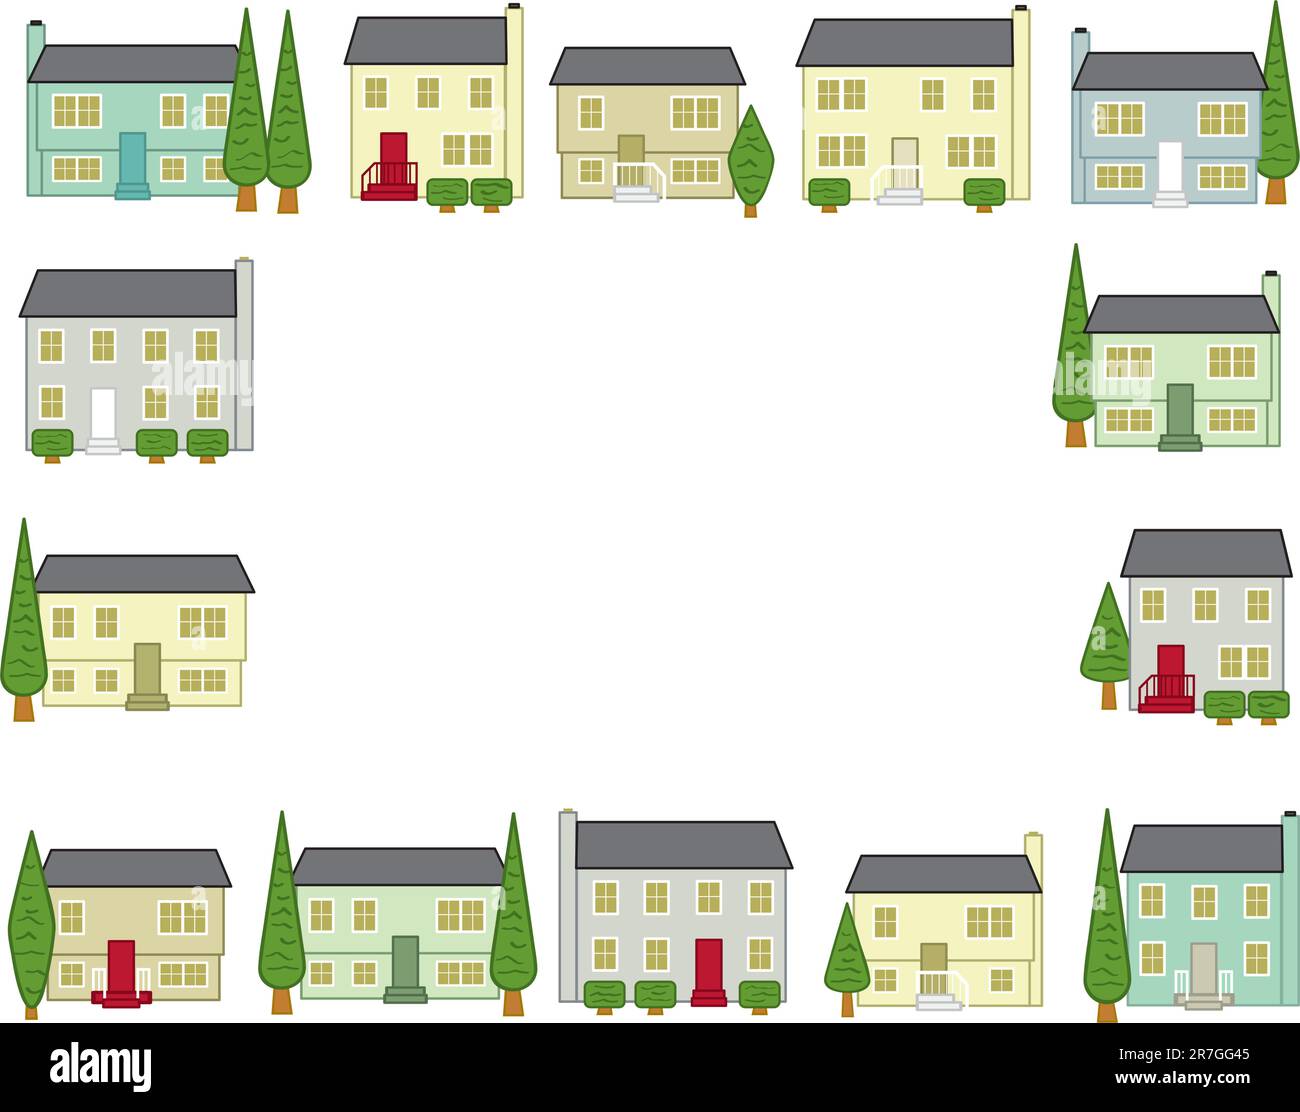 Stilisierte Häuser, die in typischen Plangemeinden in den Vereinigten Staaten zu finden sind. Stock Vektor